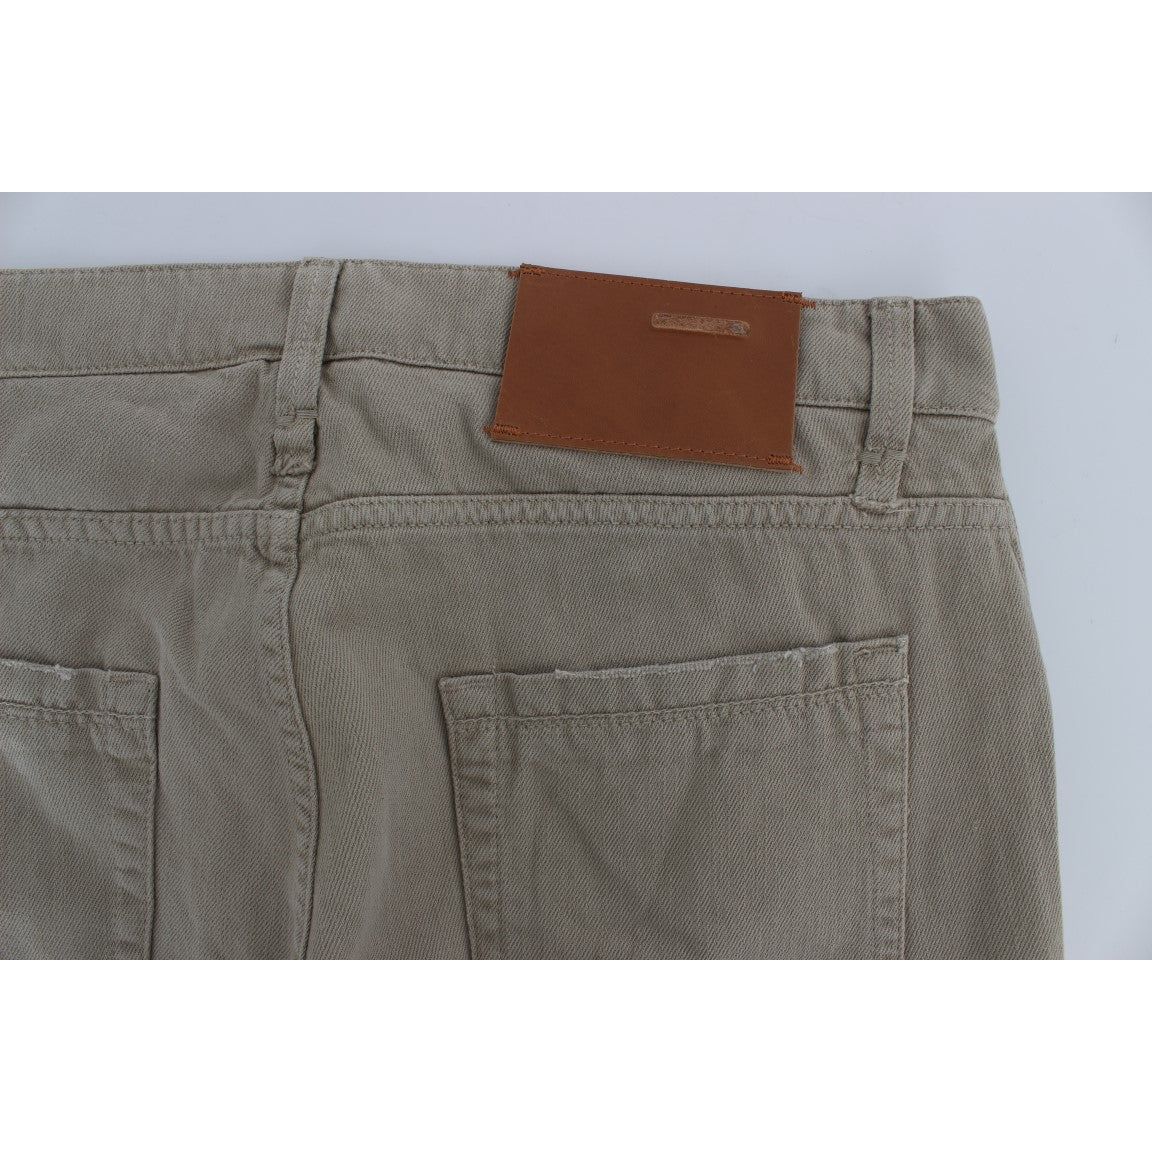 Acht | Beige Cotton Patchwork Jeans | McRichard Designer Brands